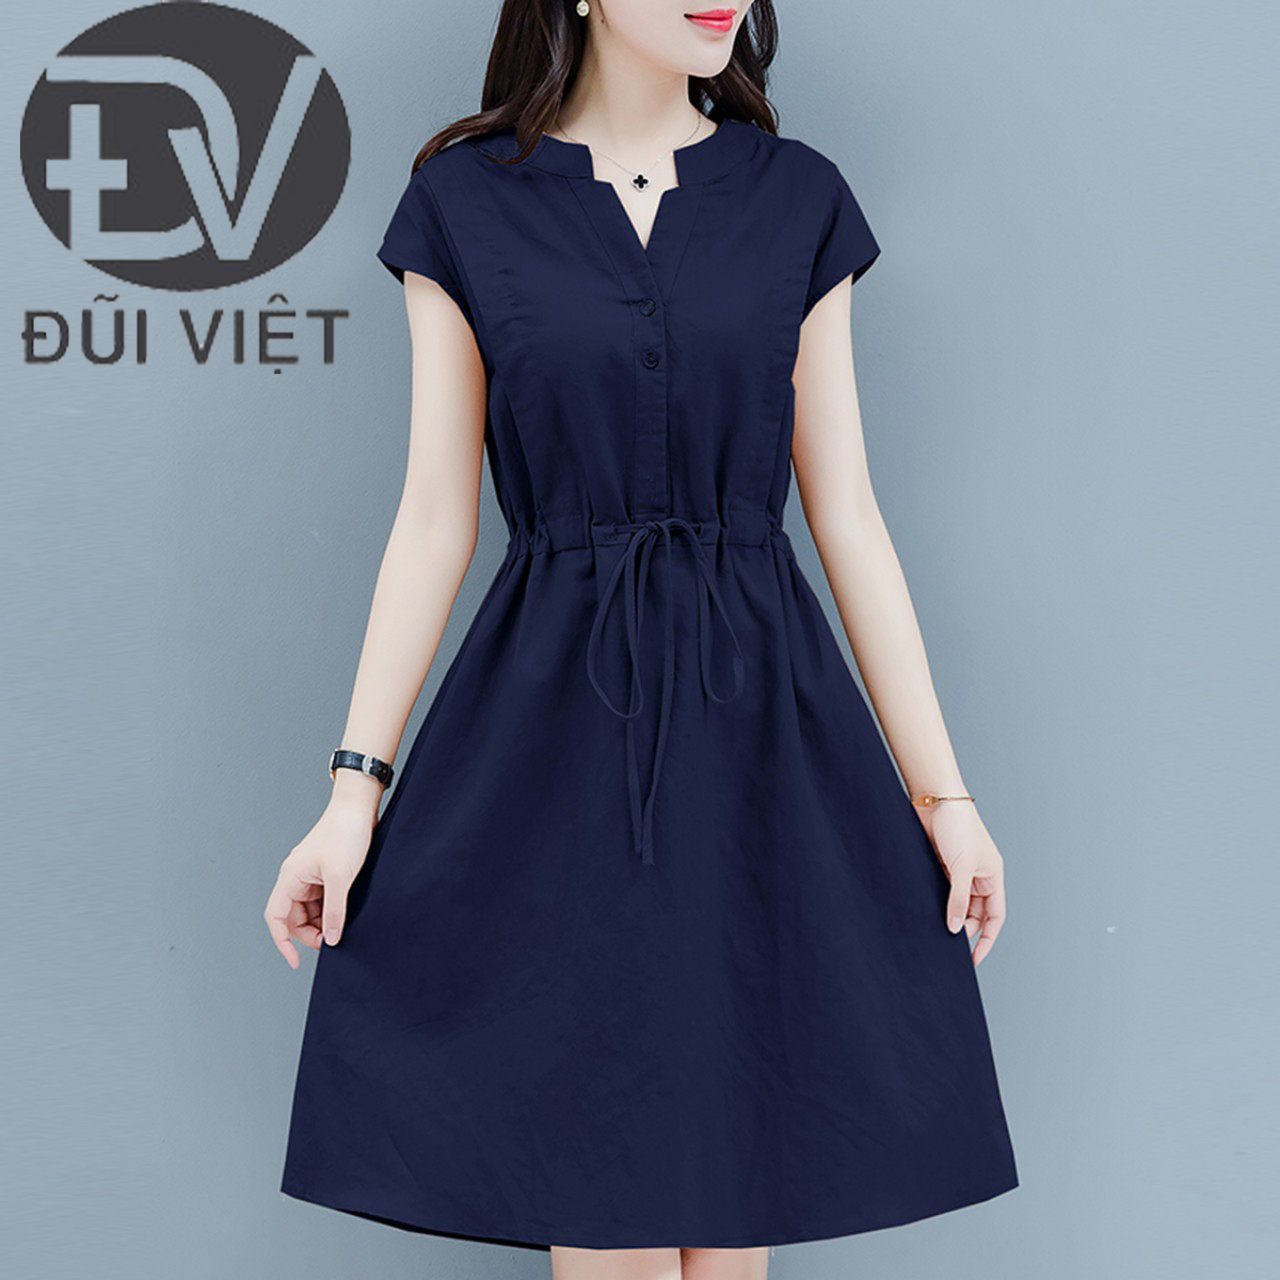 Hình ảnh Đầm Linen nữ cổ V rút eo 2 túi phong cách công sở Đũi Việt Dv160